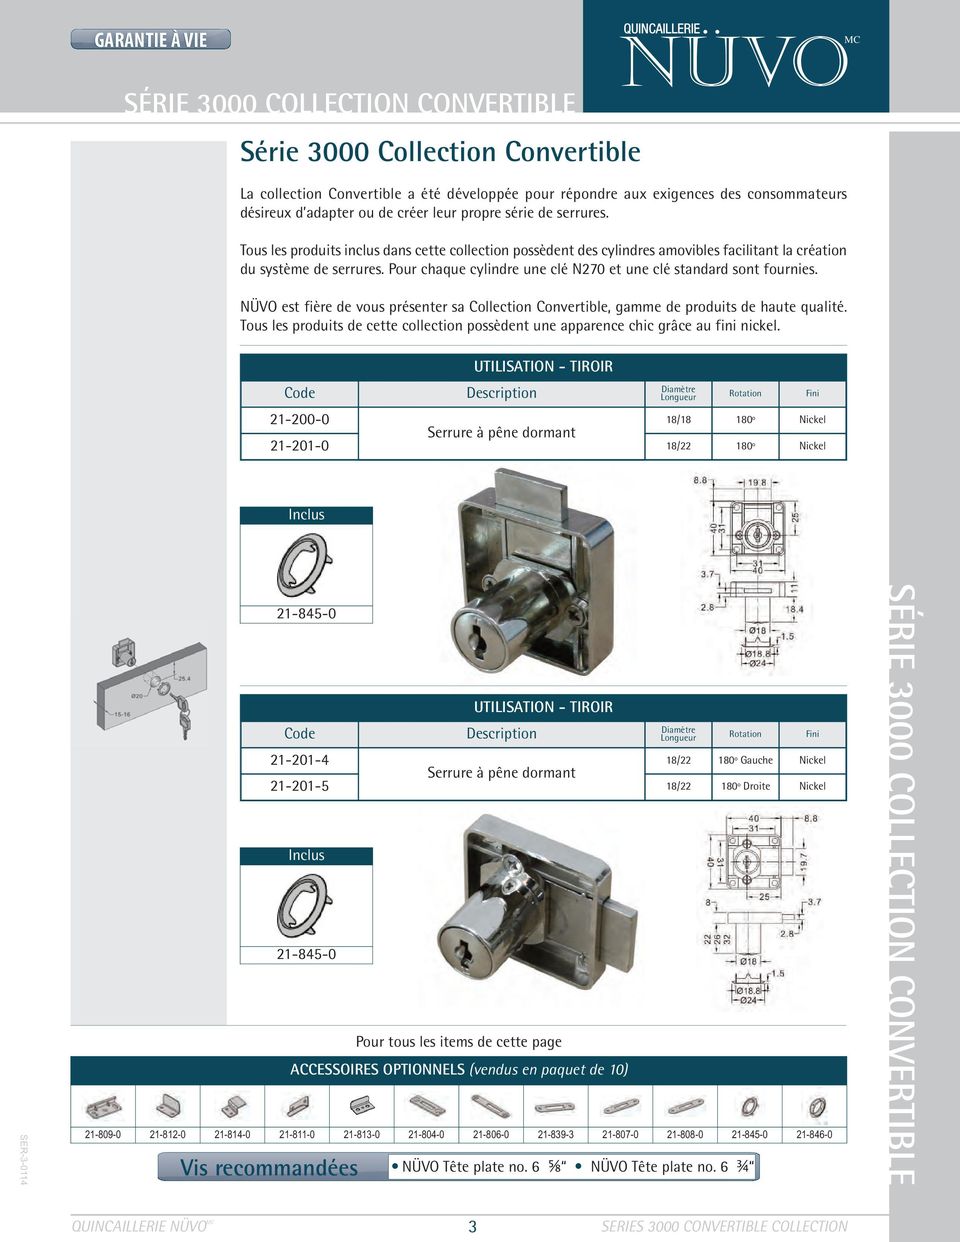 Pour chaque cylindre une clé N270 et une clé standard sont fournies. NÜVO est fière de vous présenter sa Collection Convertible, gamme de produits de haute qualité.